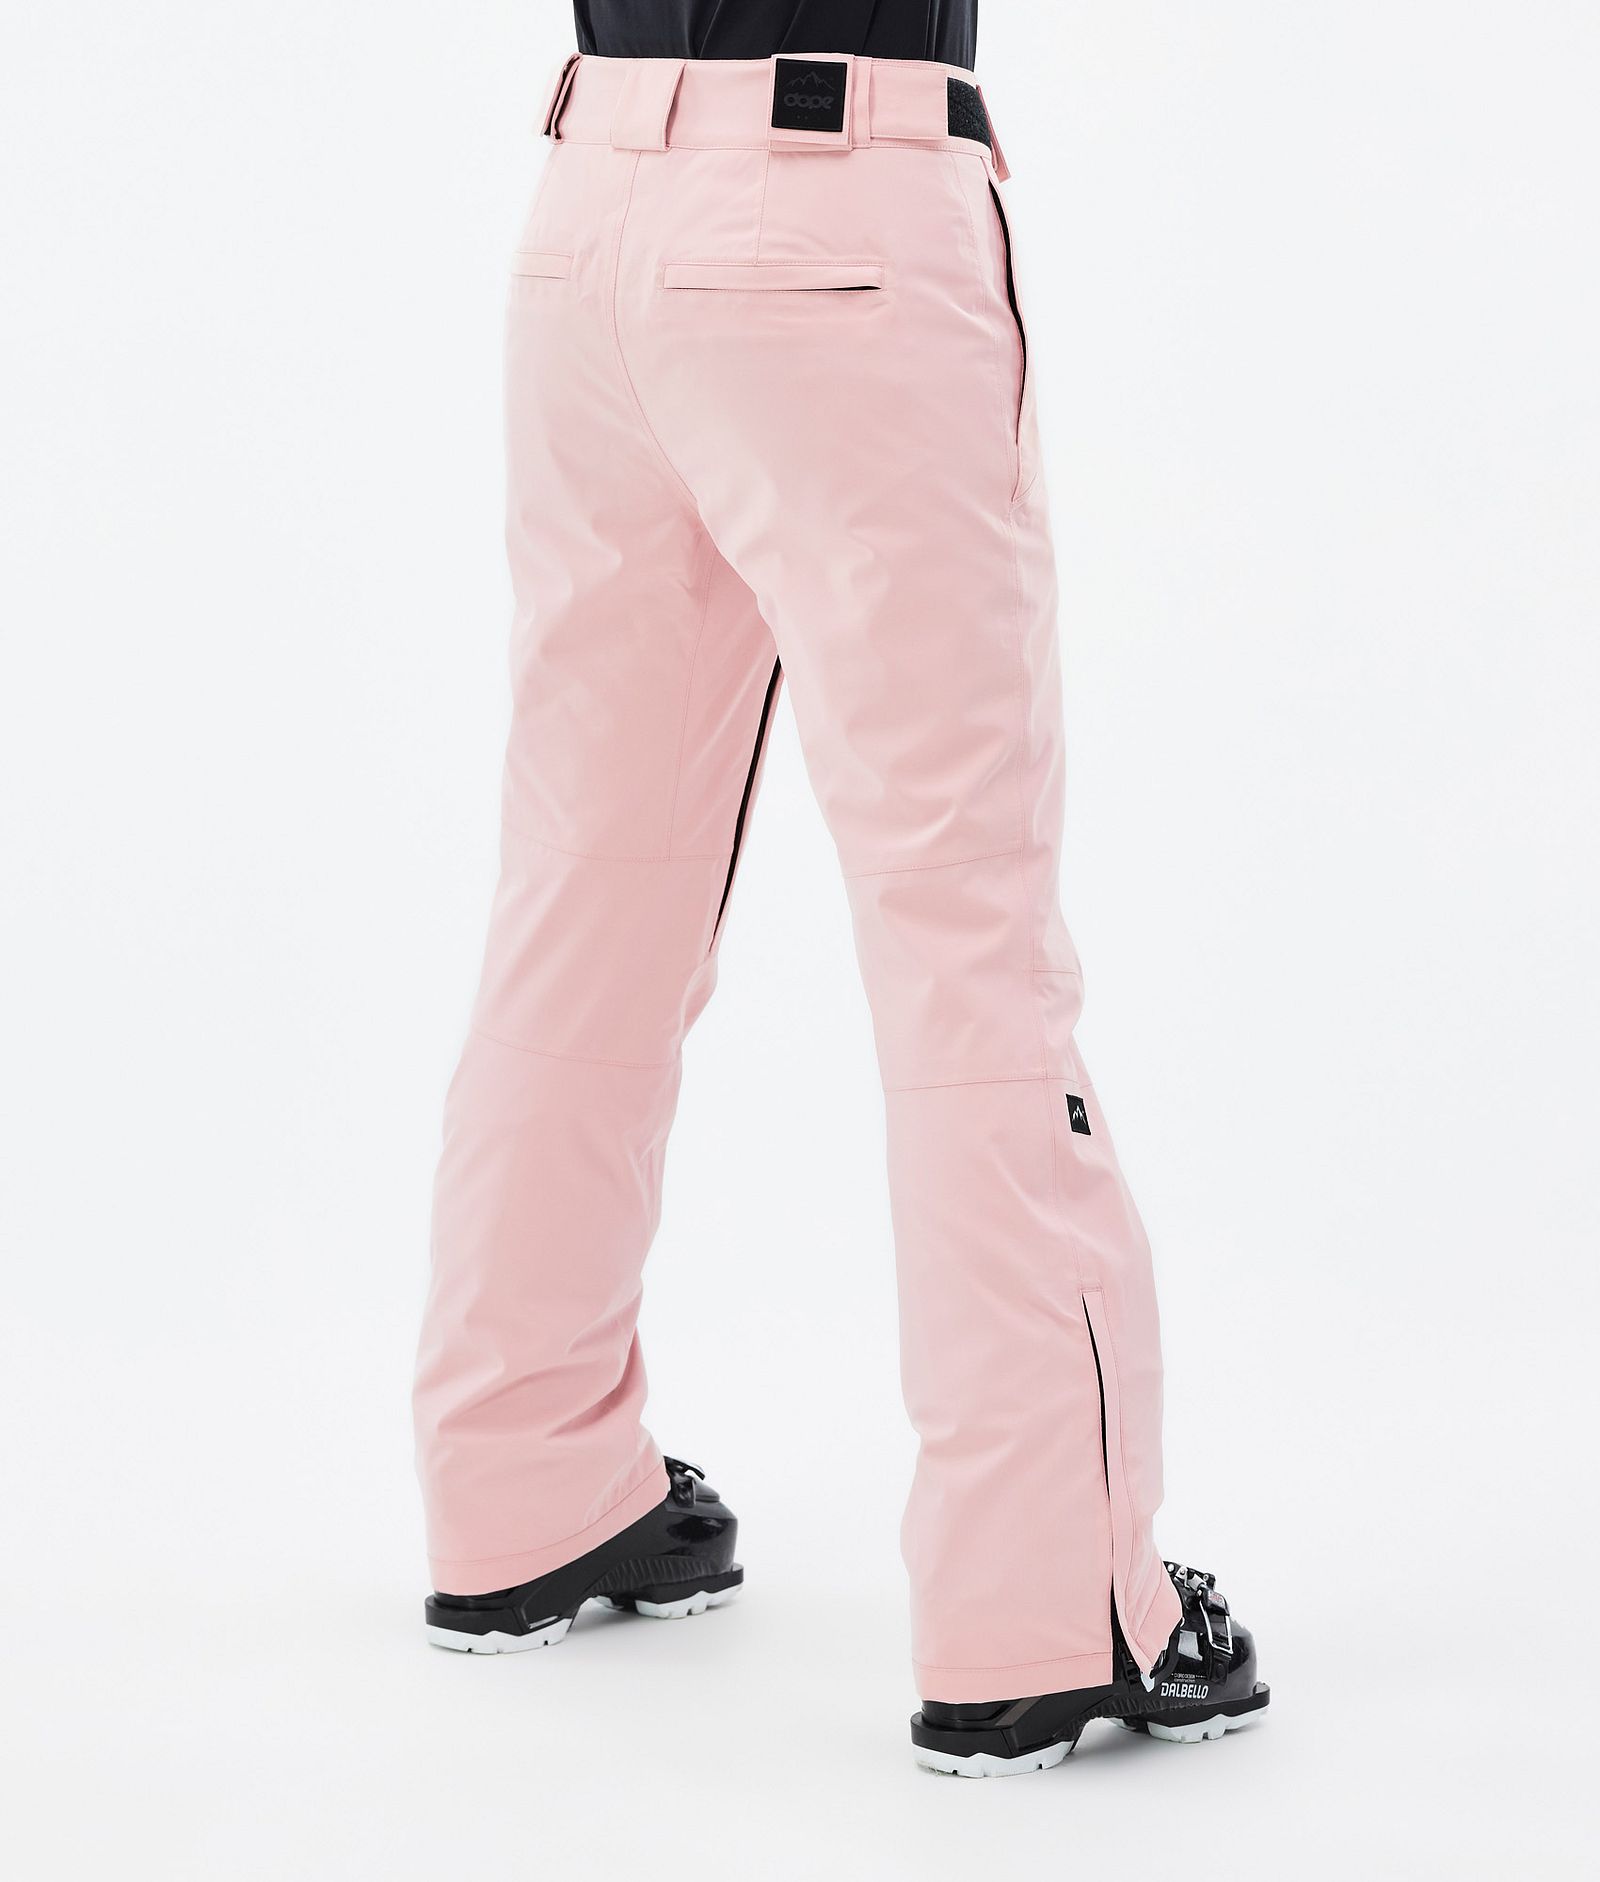 Con W 2022 Pantalones Esquí Mujer Soft Pink, Imagen 3 de 5